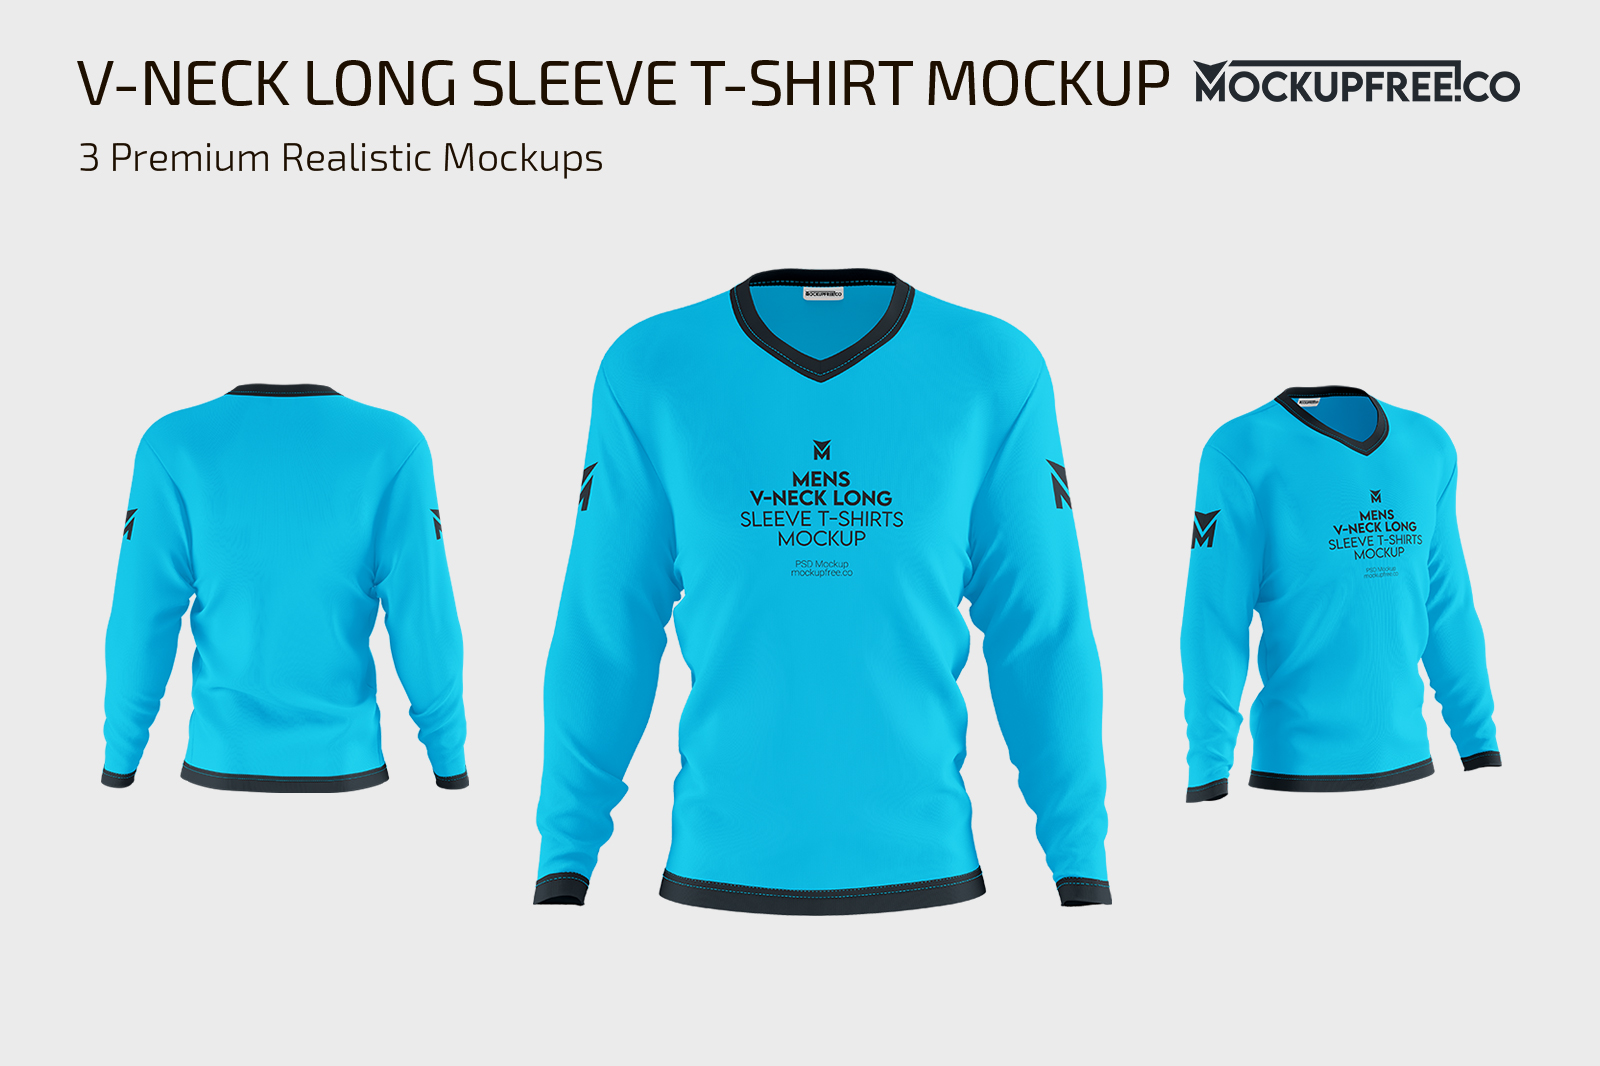 Long Sleeve Shirt Mockup - Free Vectors & PSDs to Download